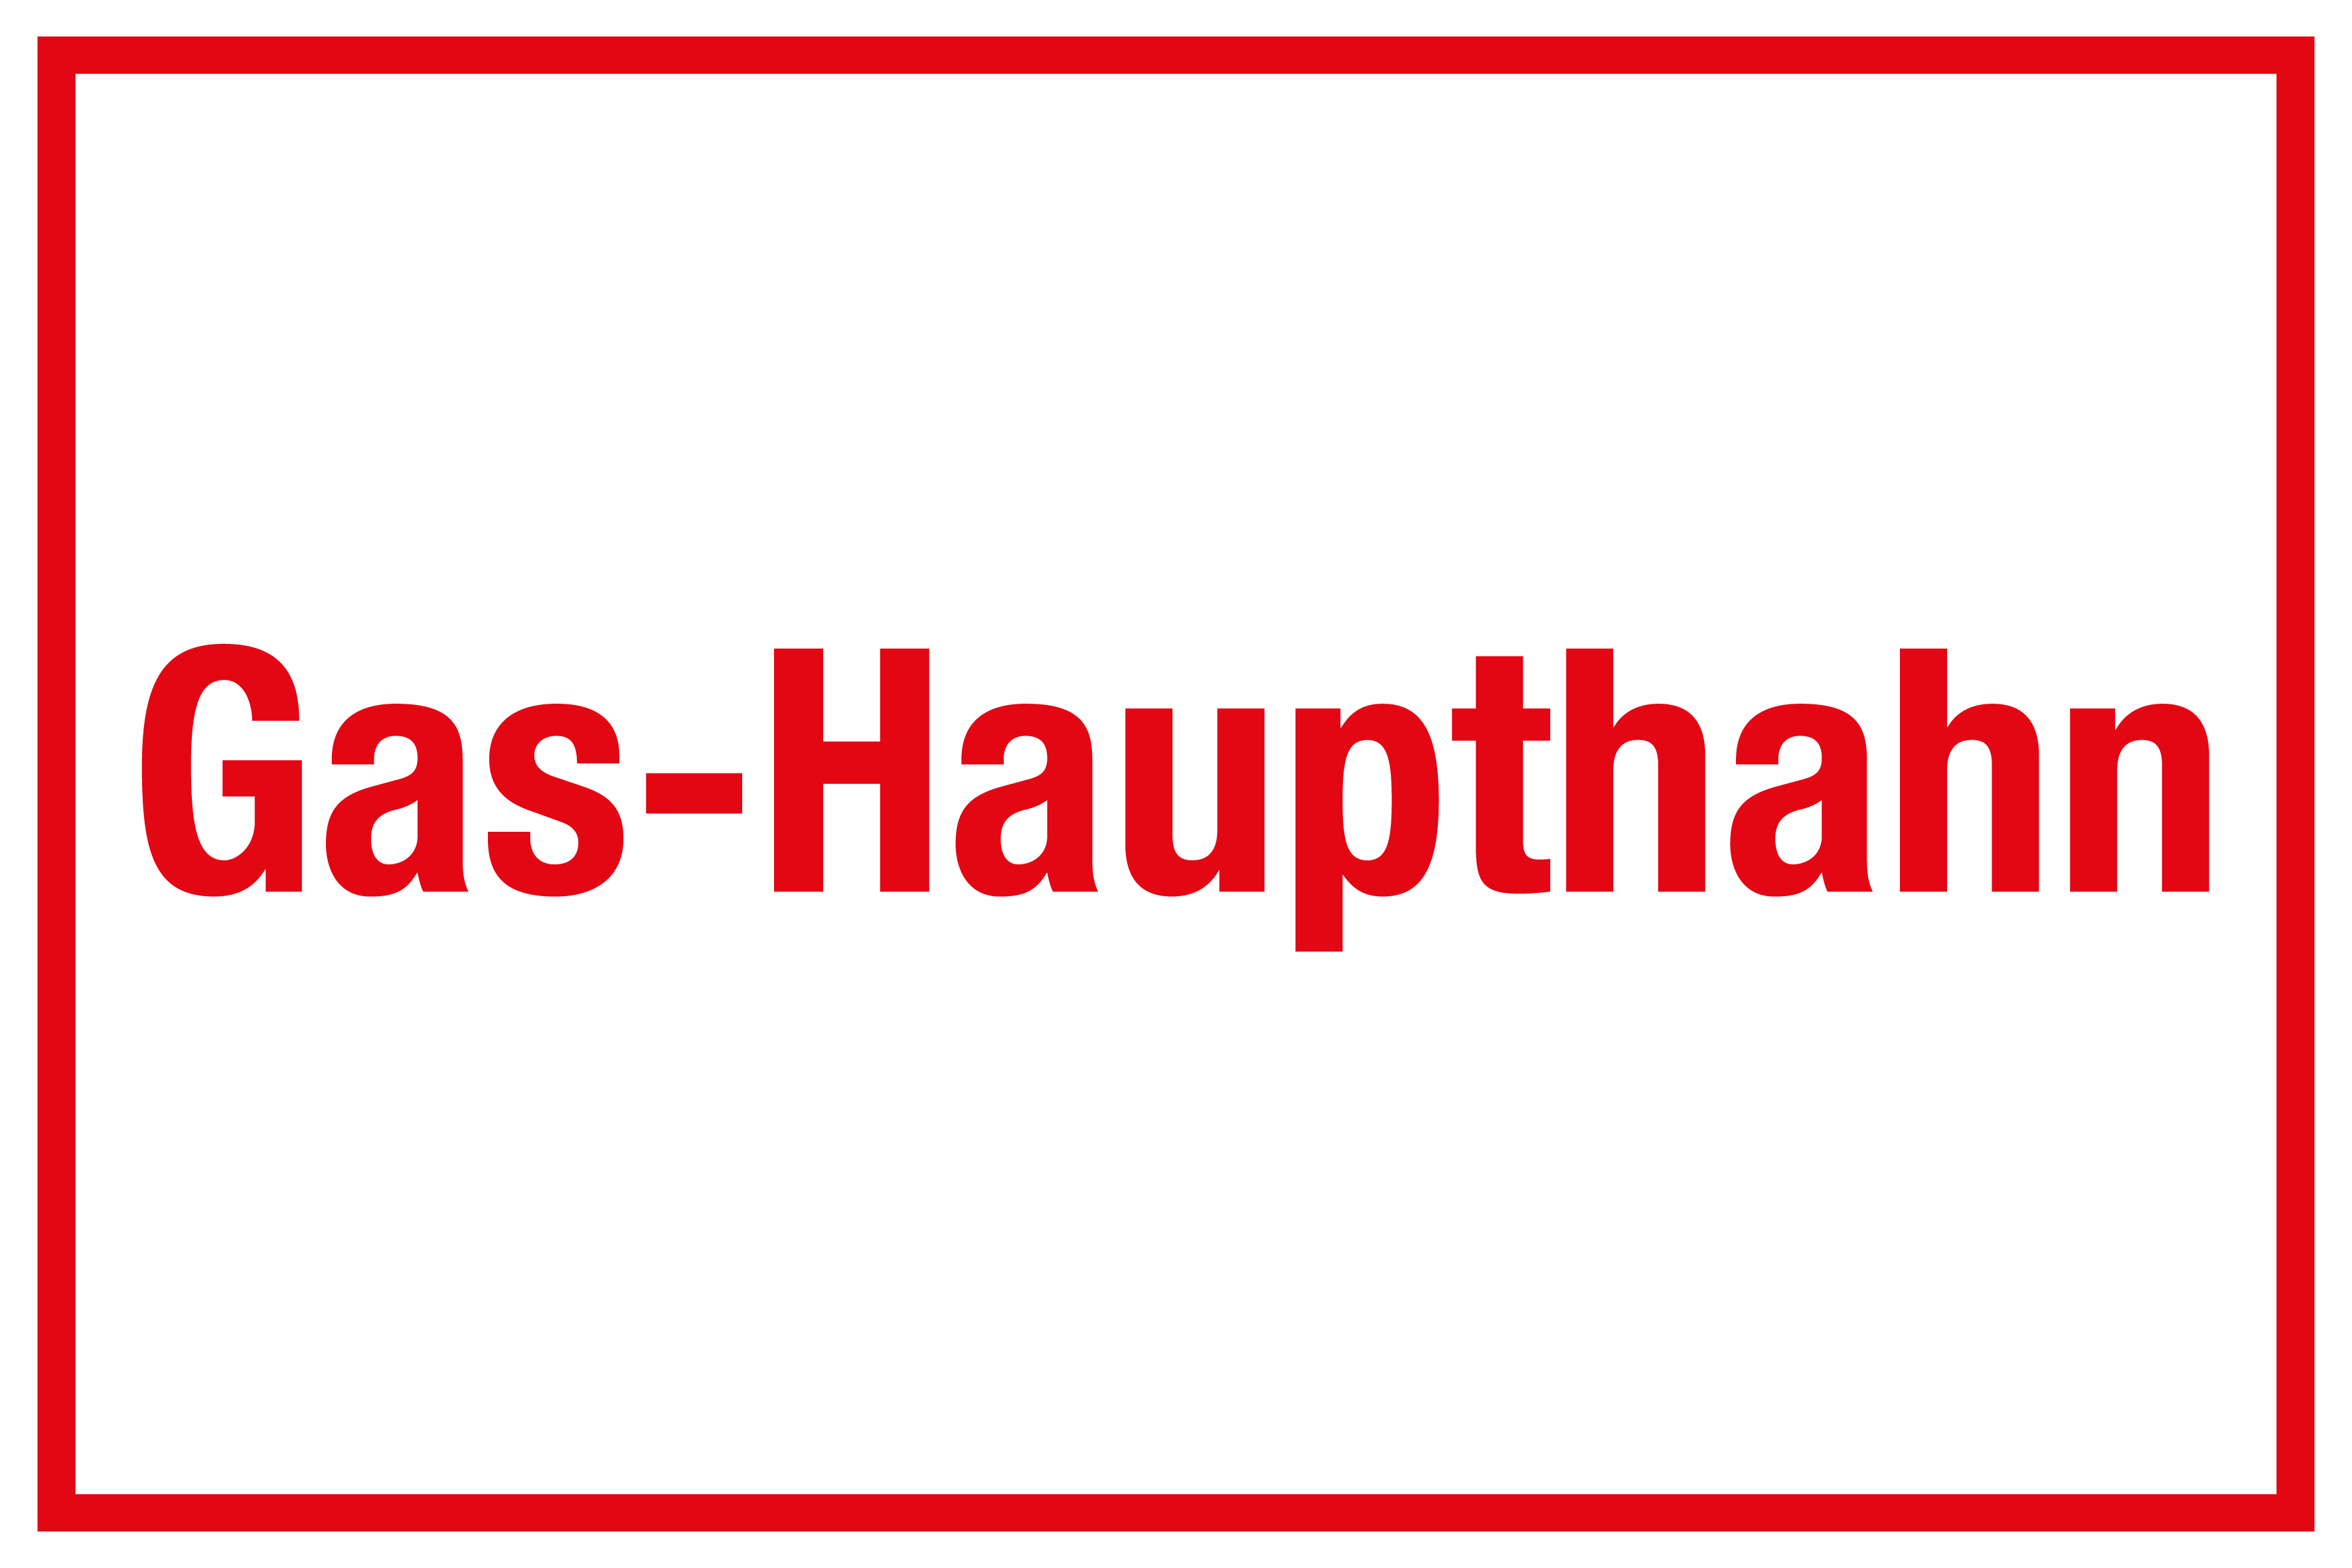 Schild für Gas- und Heizungsanlagen - Gas-Haupthahn  - Folie Selbstklebend - 20 x 30 cm